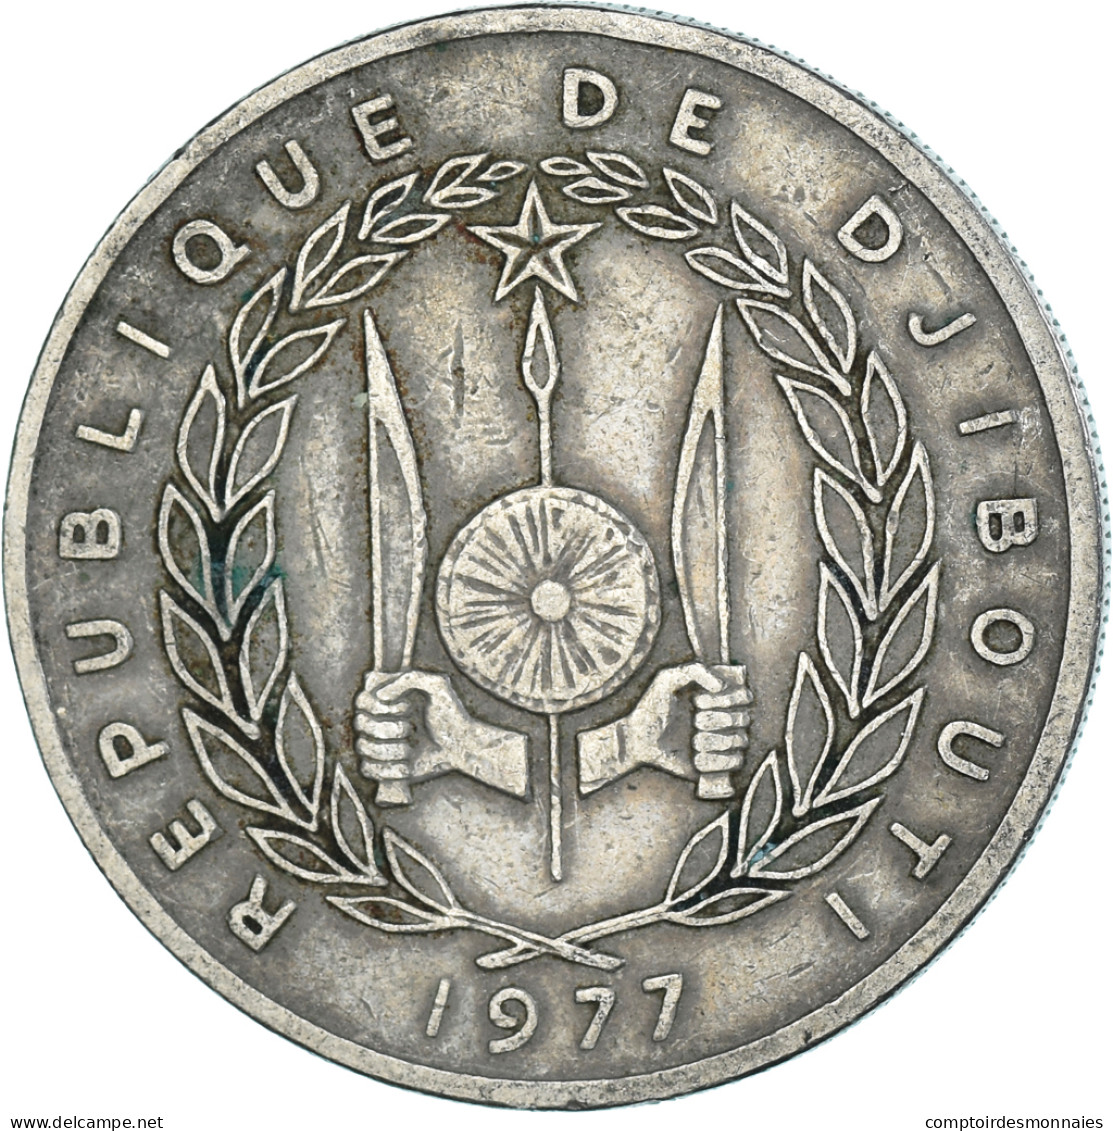 Monnaie, Djibouti, 100 Francs, 1977 - Djibouti